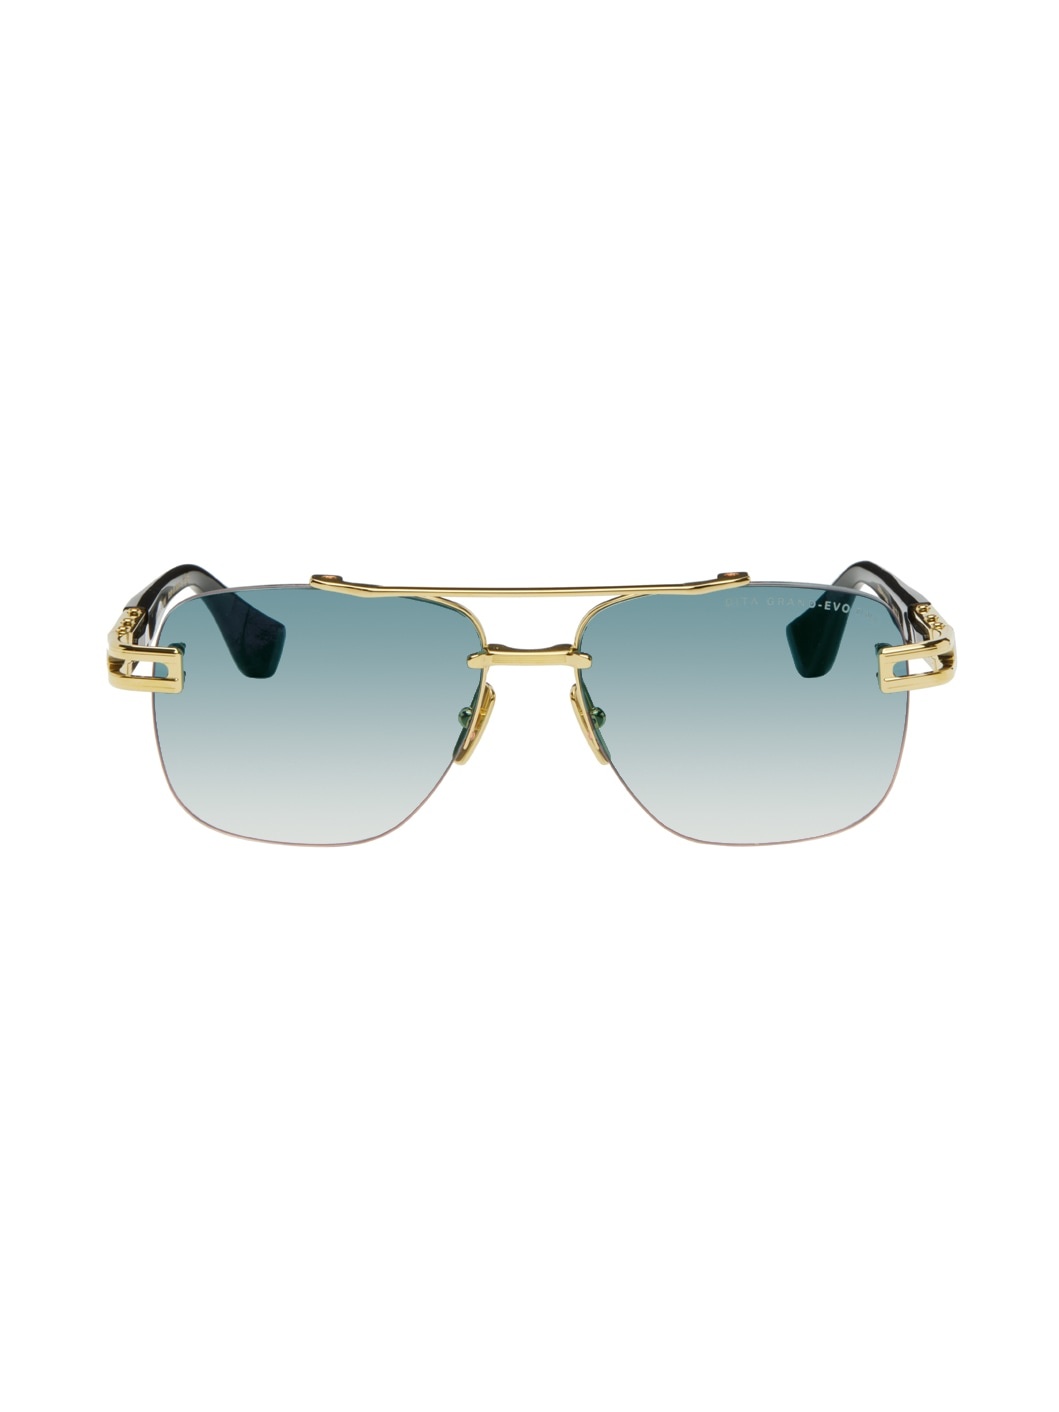 SSENSE Exclusive Gold Grand-Evo One Sunglasses - 1